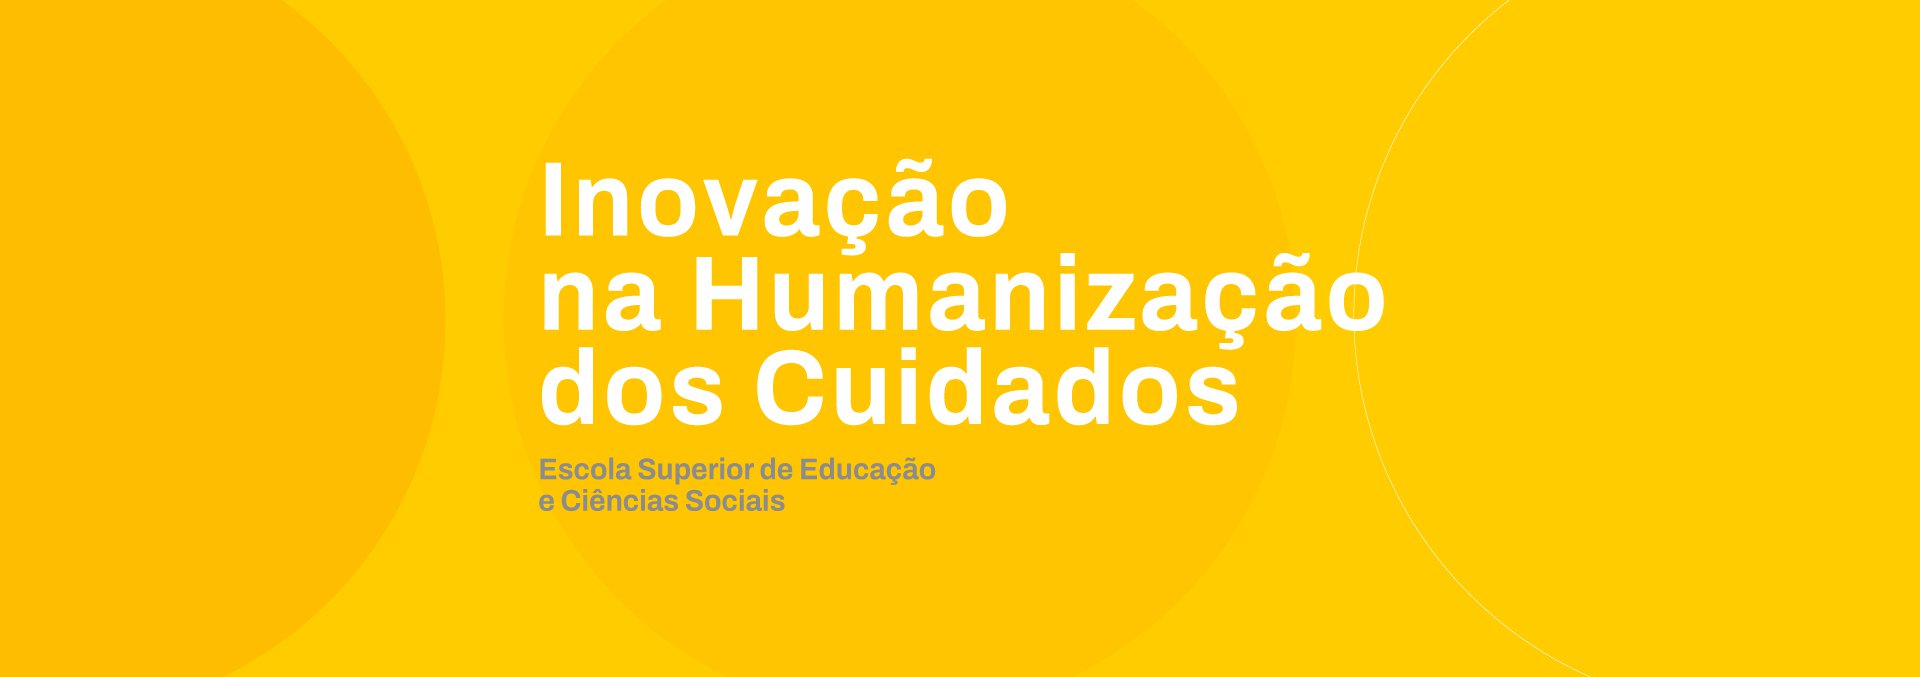 Pos_Graduacao_Inovacao_na_Humanizacao_dos_Cuidados.png